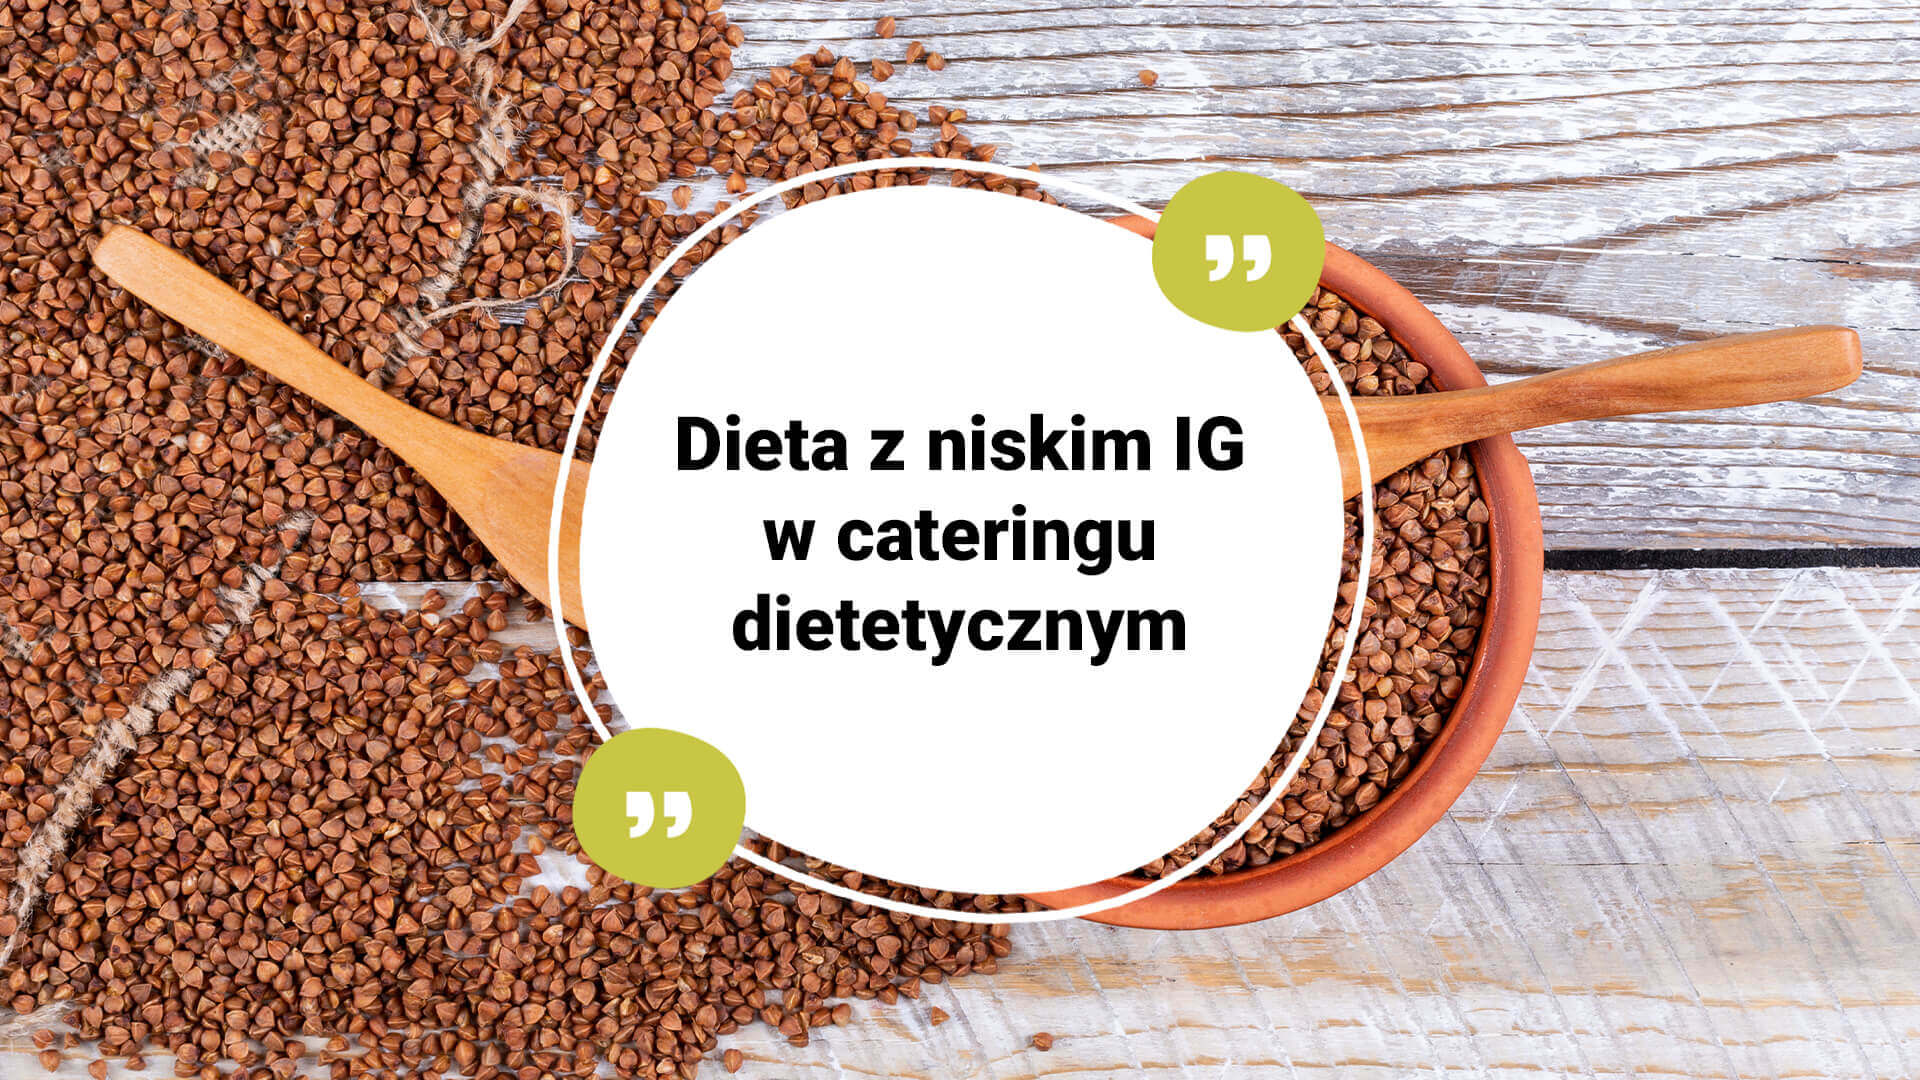 Dieta z niskim IG w cateringu dietetycznym - dla kogo?